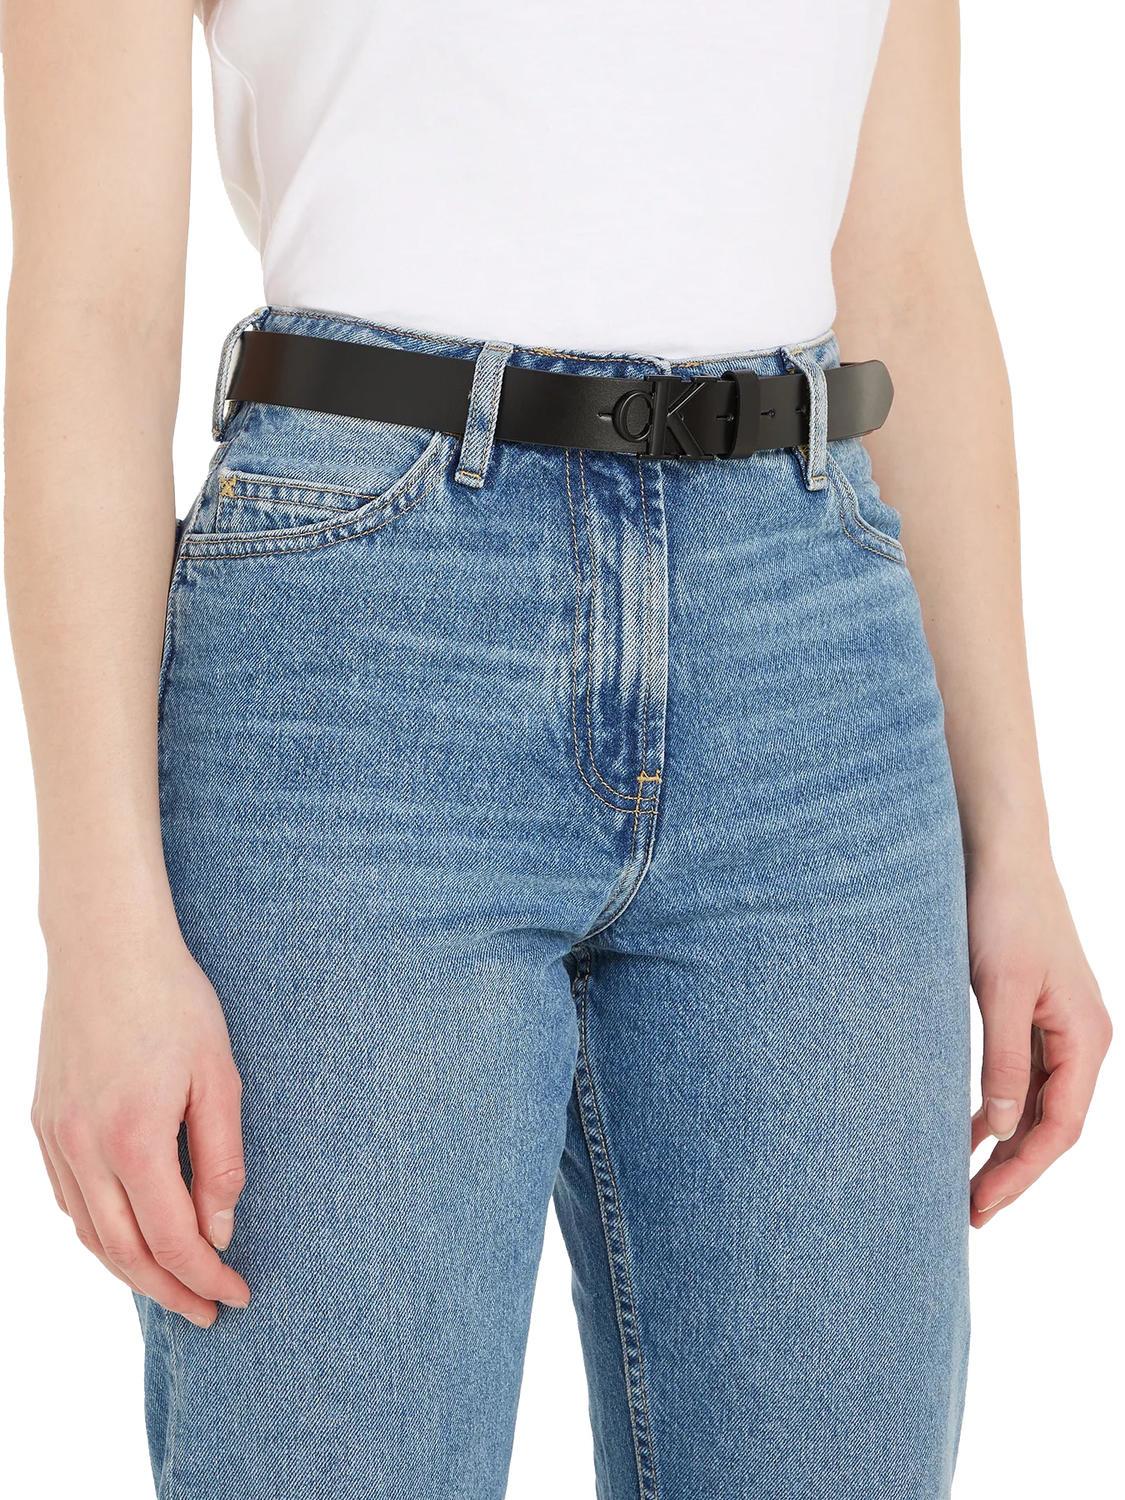 Calvin Klein Ck 3.0 Schwarz- Mono Zu Einkaufen Outlet-Preisen! Round Jeans Ledergürtel